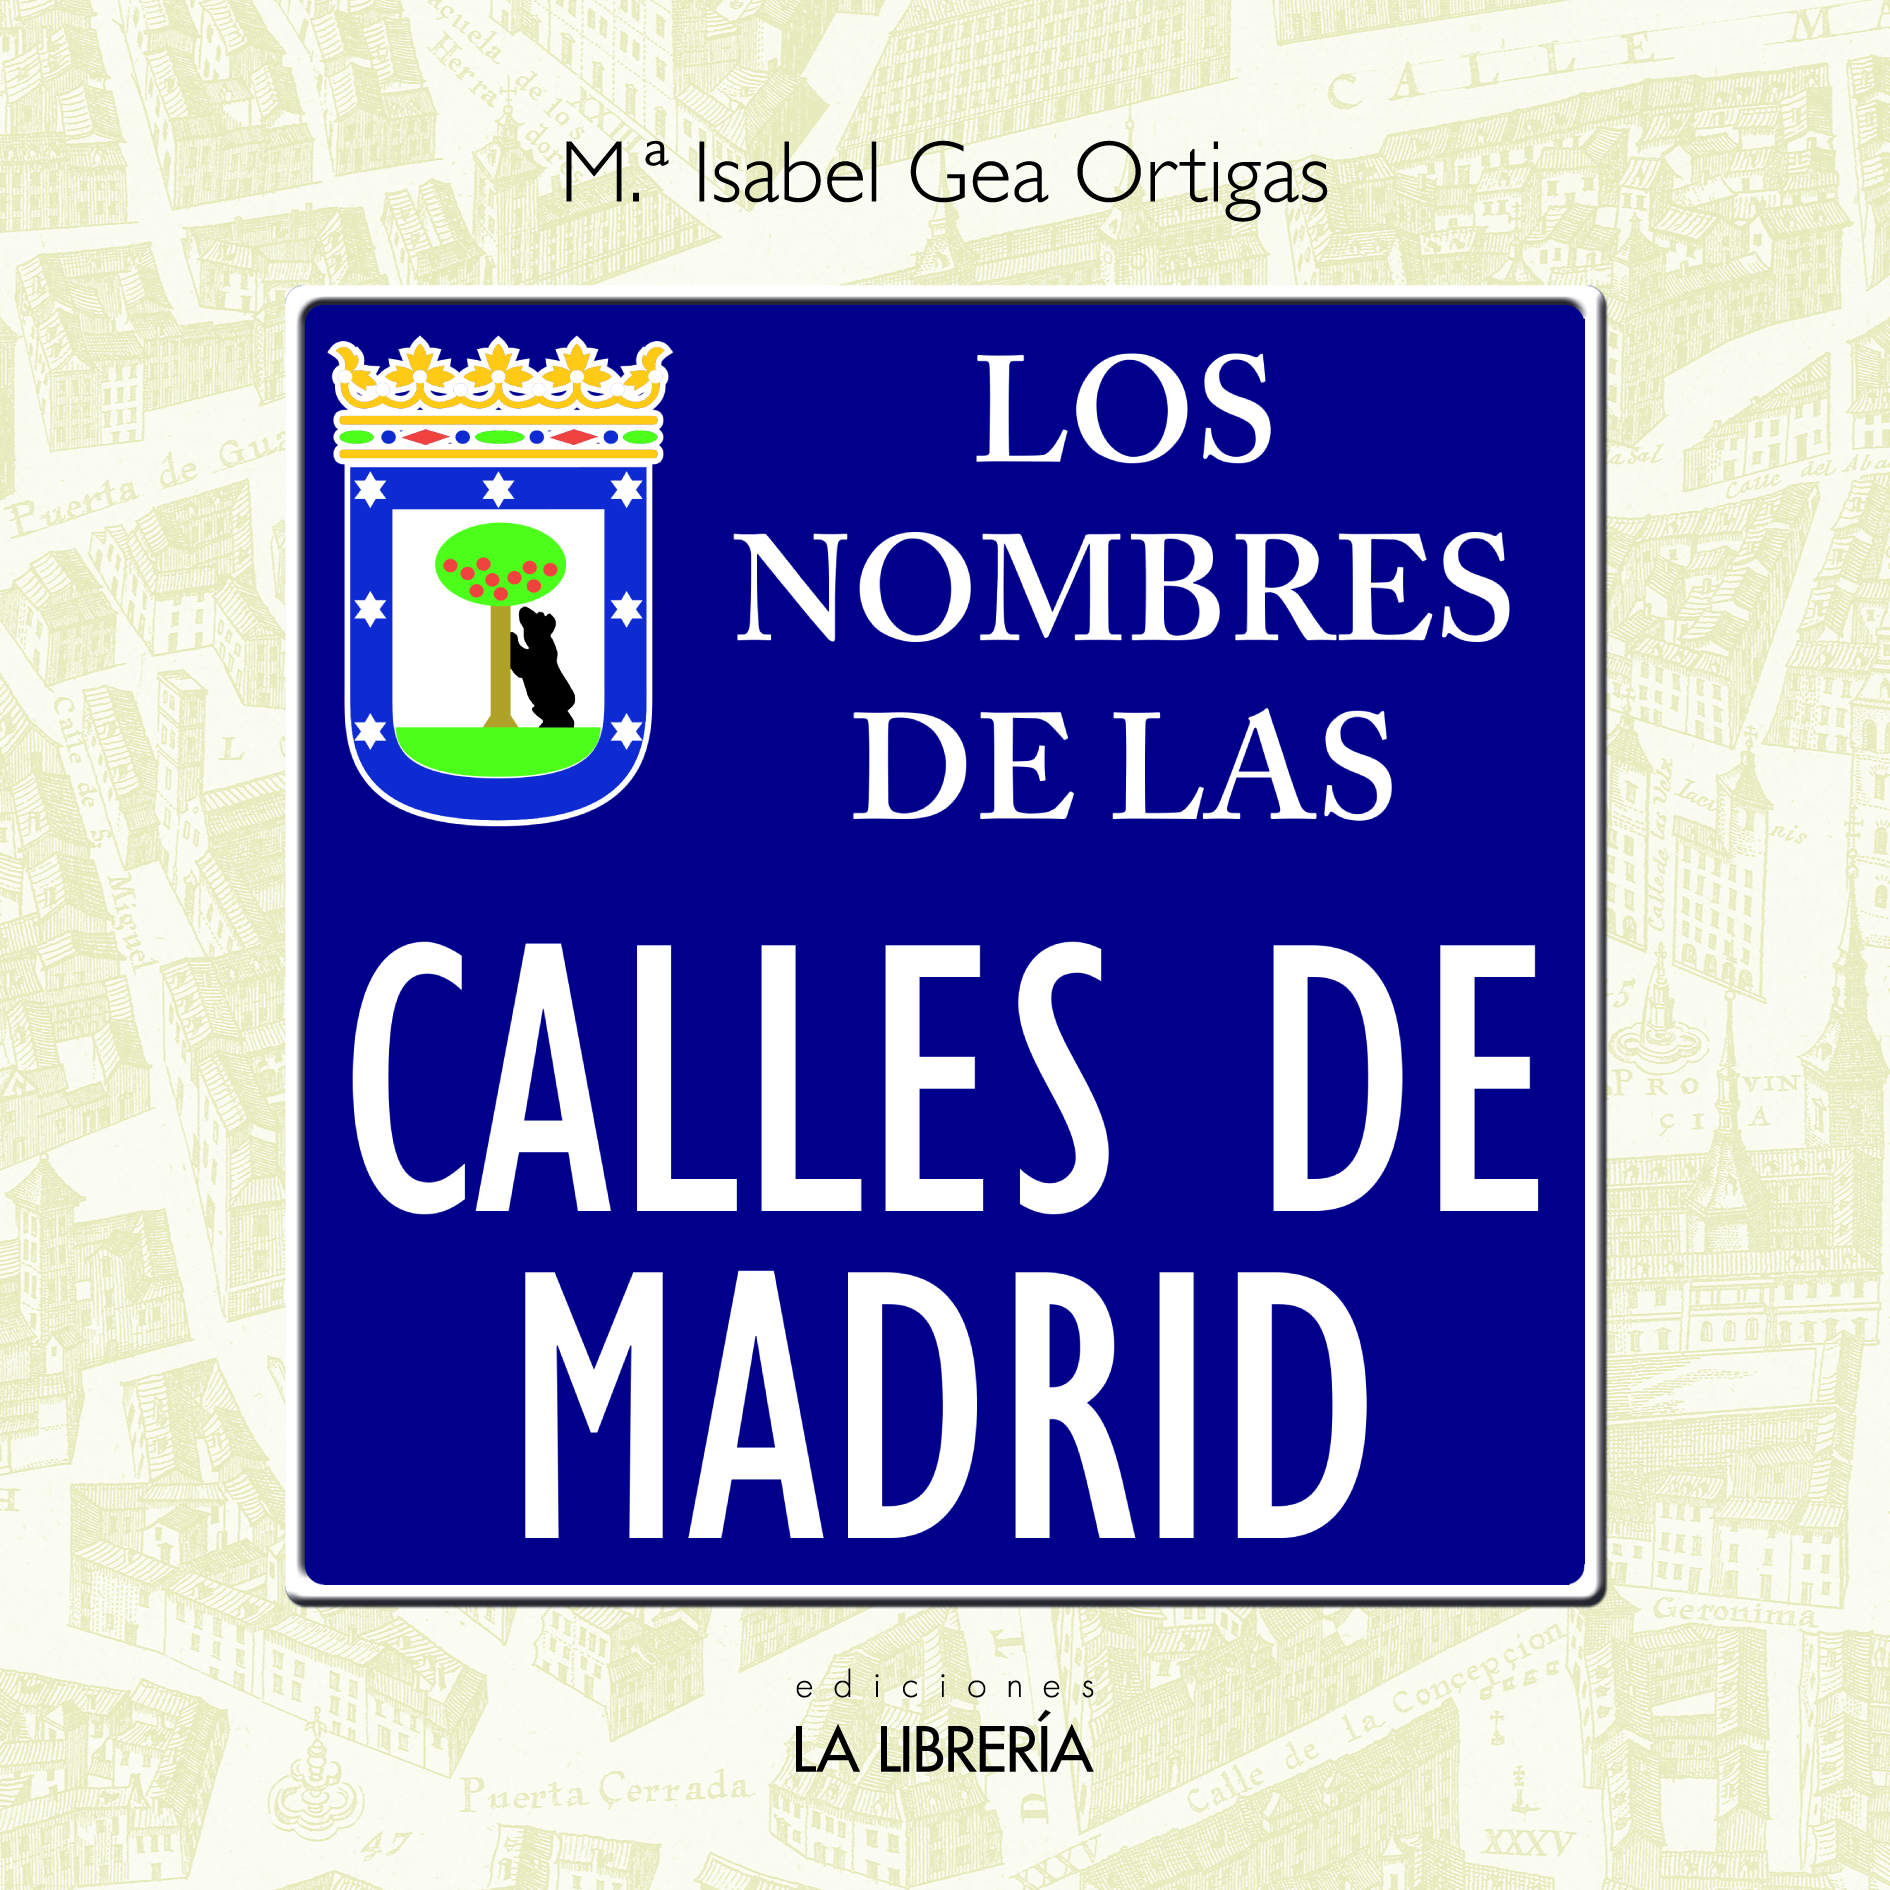 Recomendamos: Los nombres de las calles de Madrid